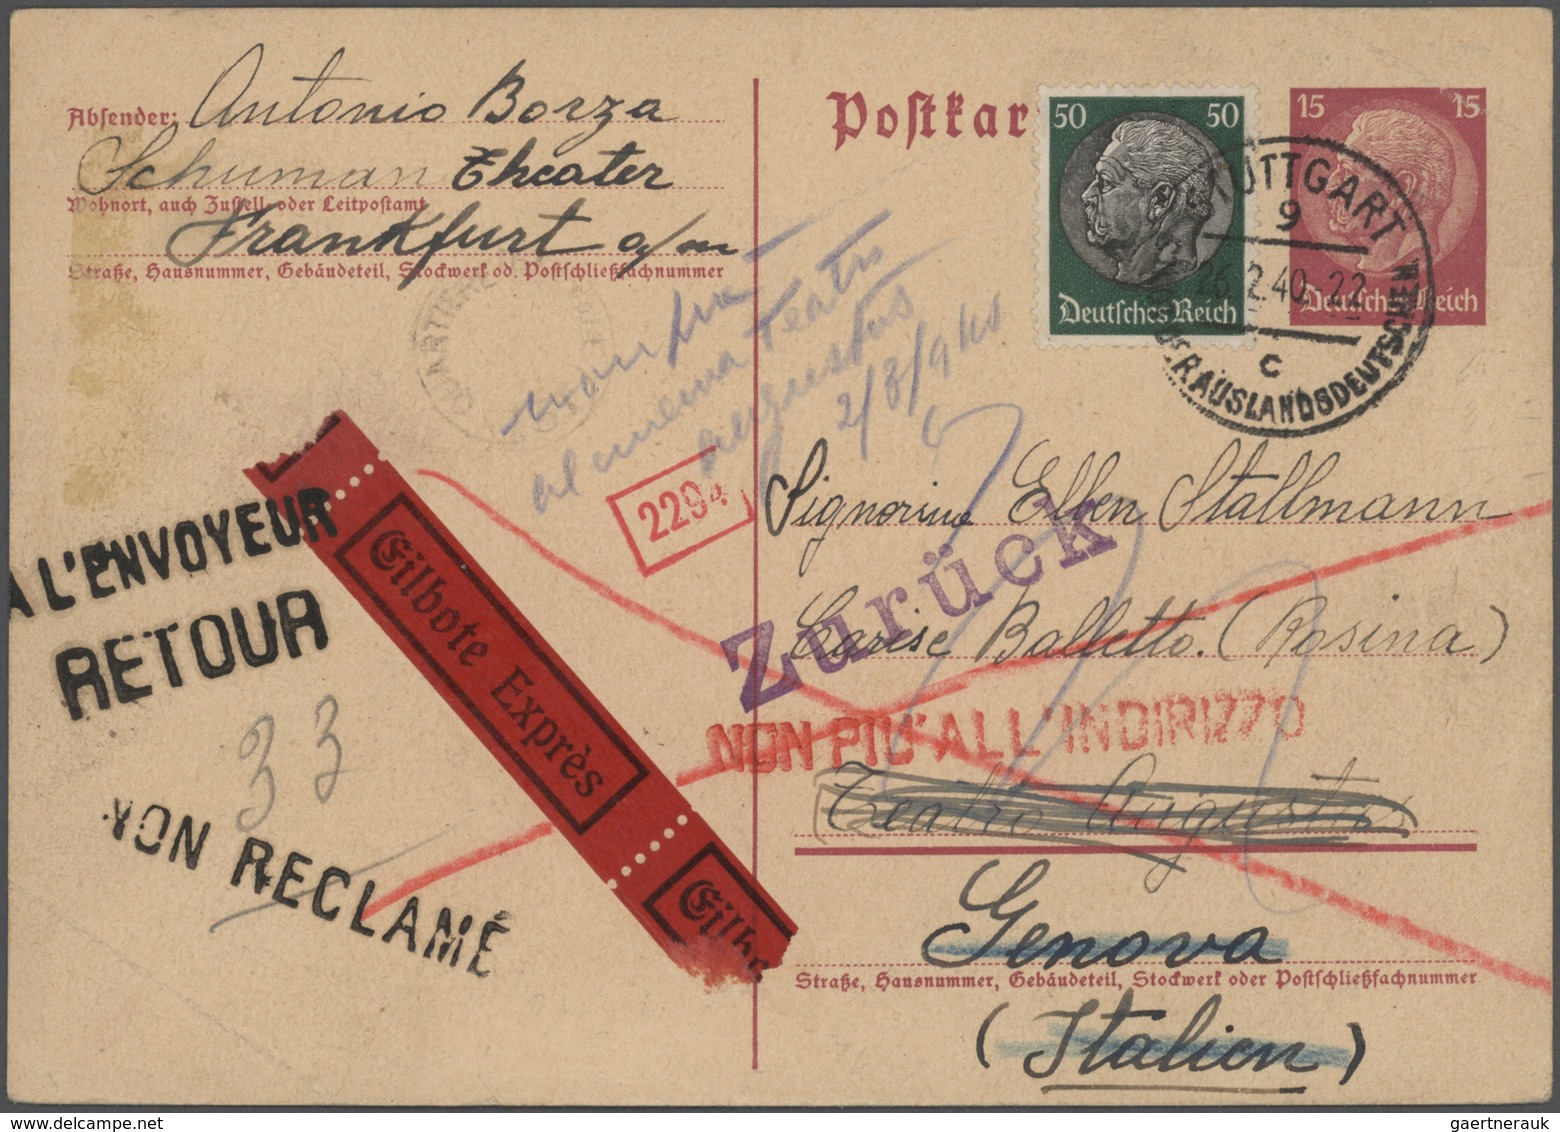 31781 Deutsches Reich - Ganzsachen: 1933/1944, hochwertige Spezialsammlung mit 75 Ganzsachenkarten des III